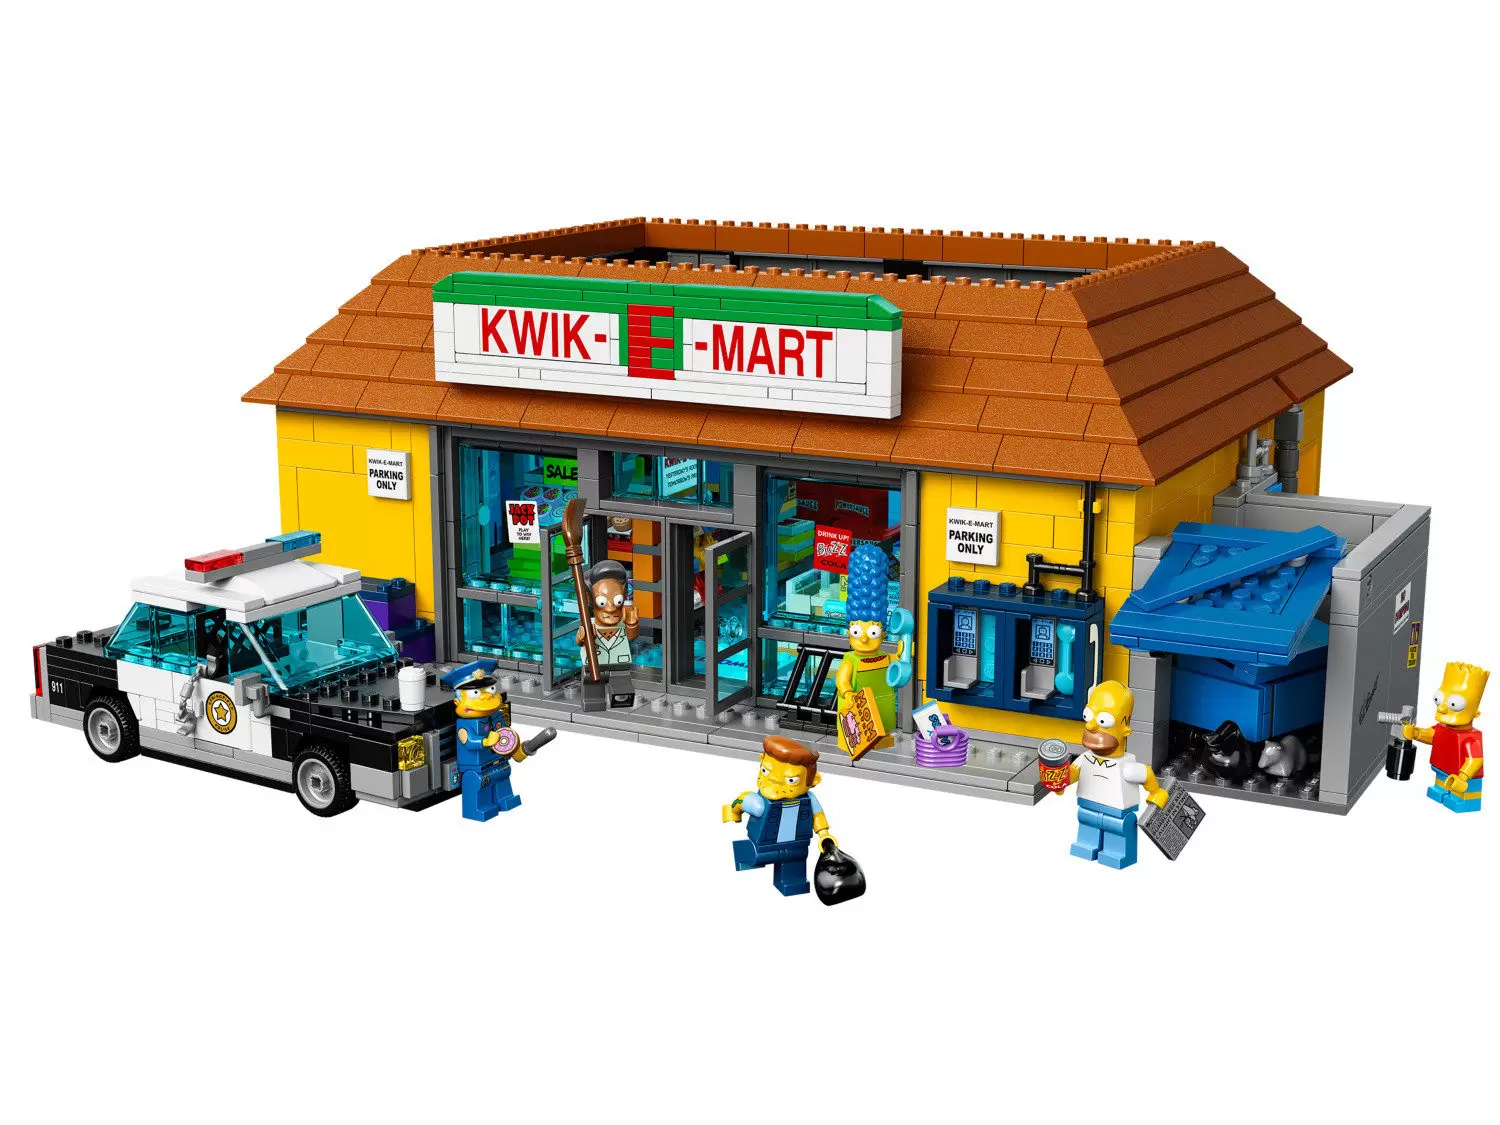 LEGO Simpson - Kwik-E-Mart